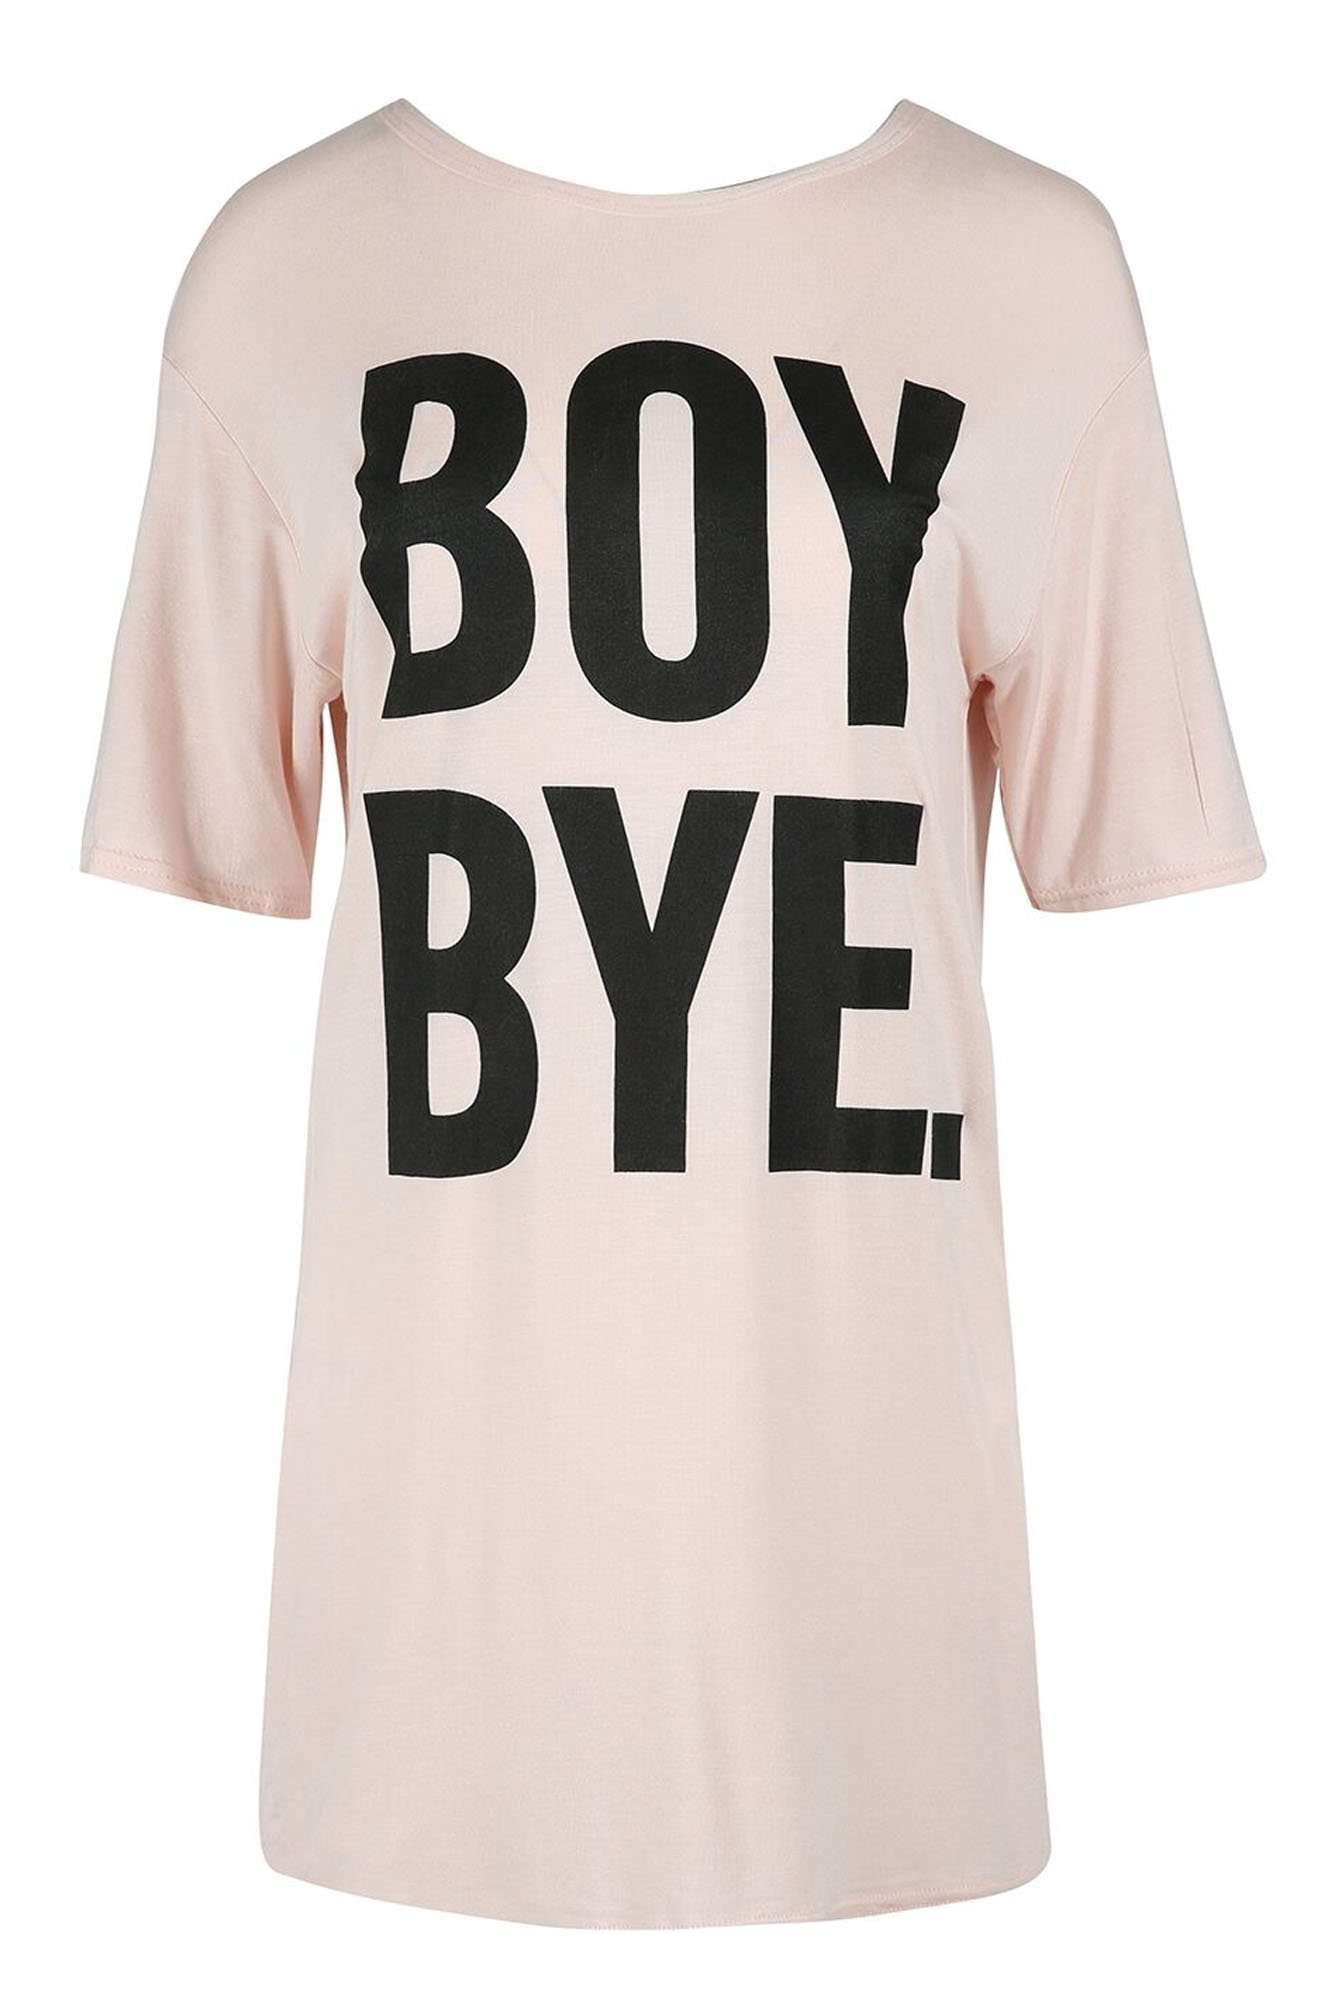 Ashby Boy Bye Slogan Print TShirt Dress - bejealous-com